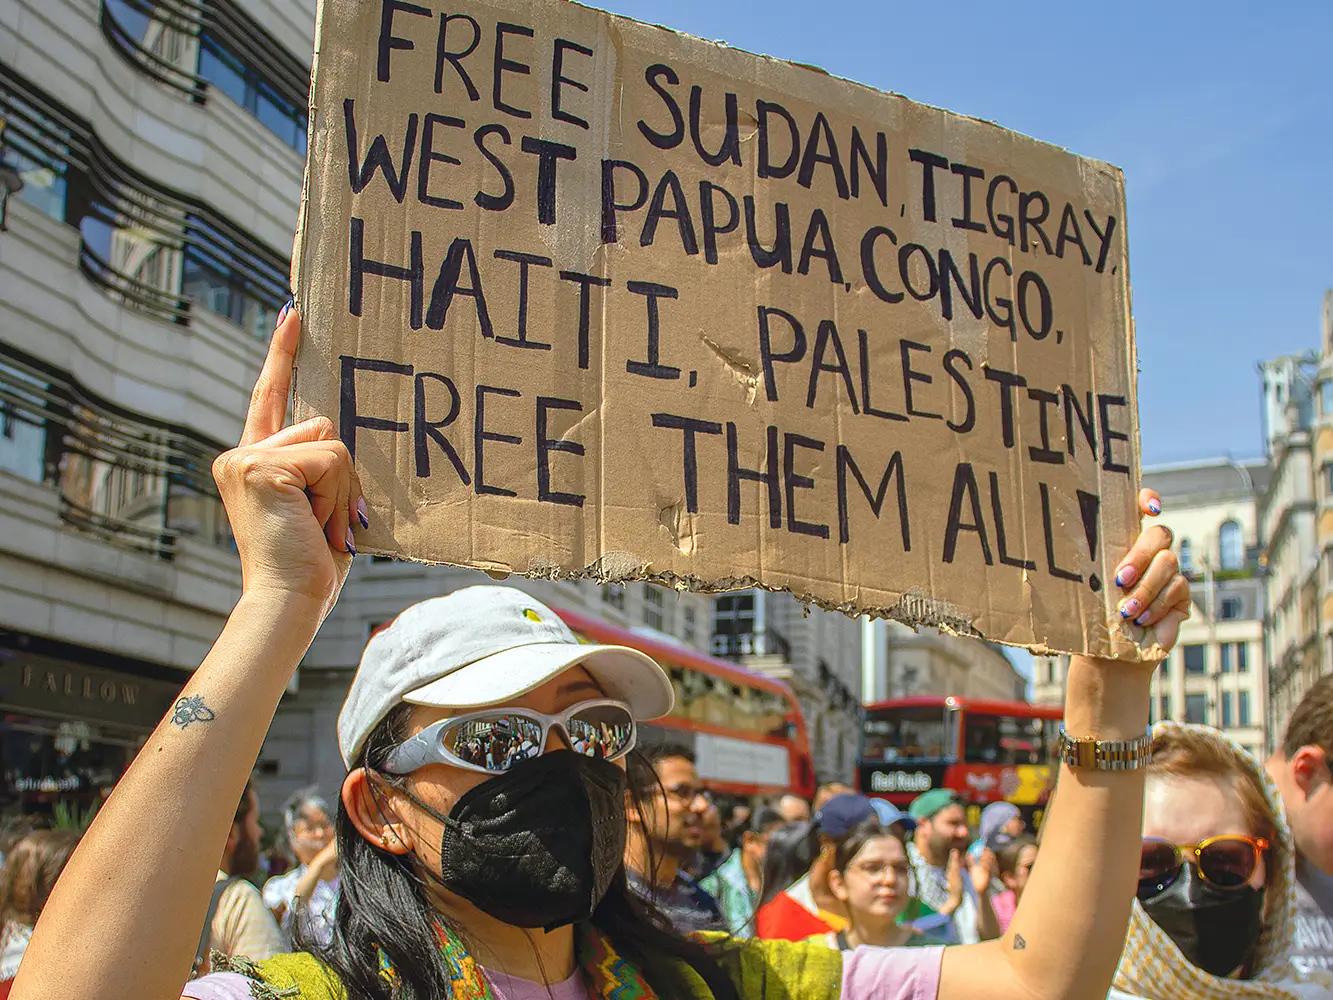 Une manifestante tient une pancarte "Free Sudan, Tigray, West Papua, Congo, Haiti, Palestine. Free them all” lors d'une marche pour le Soudan